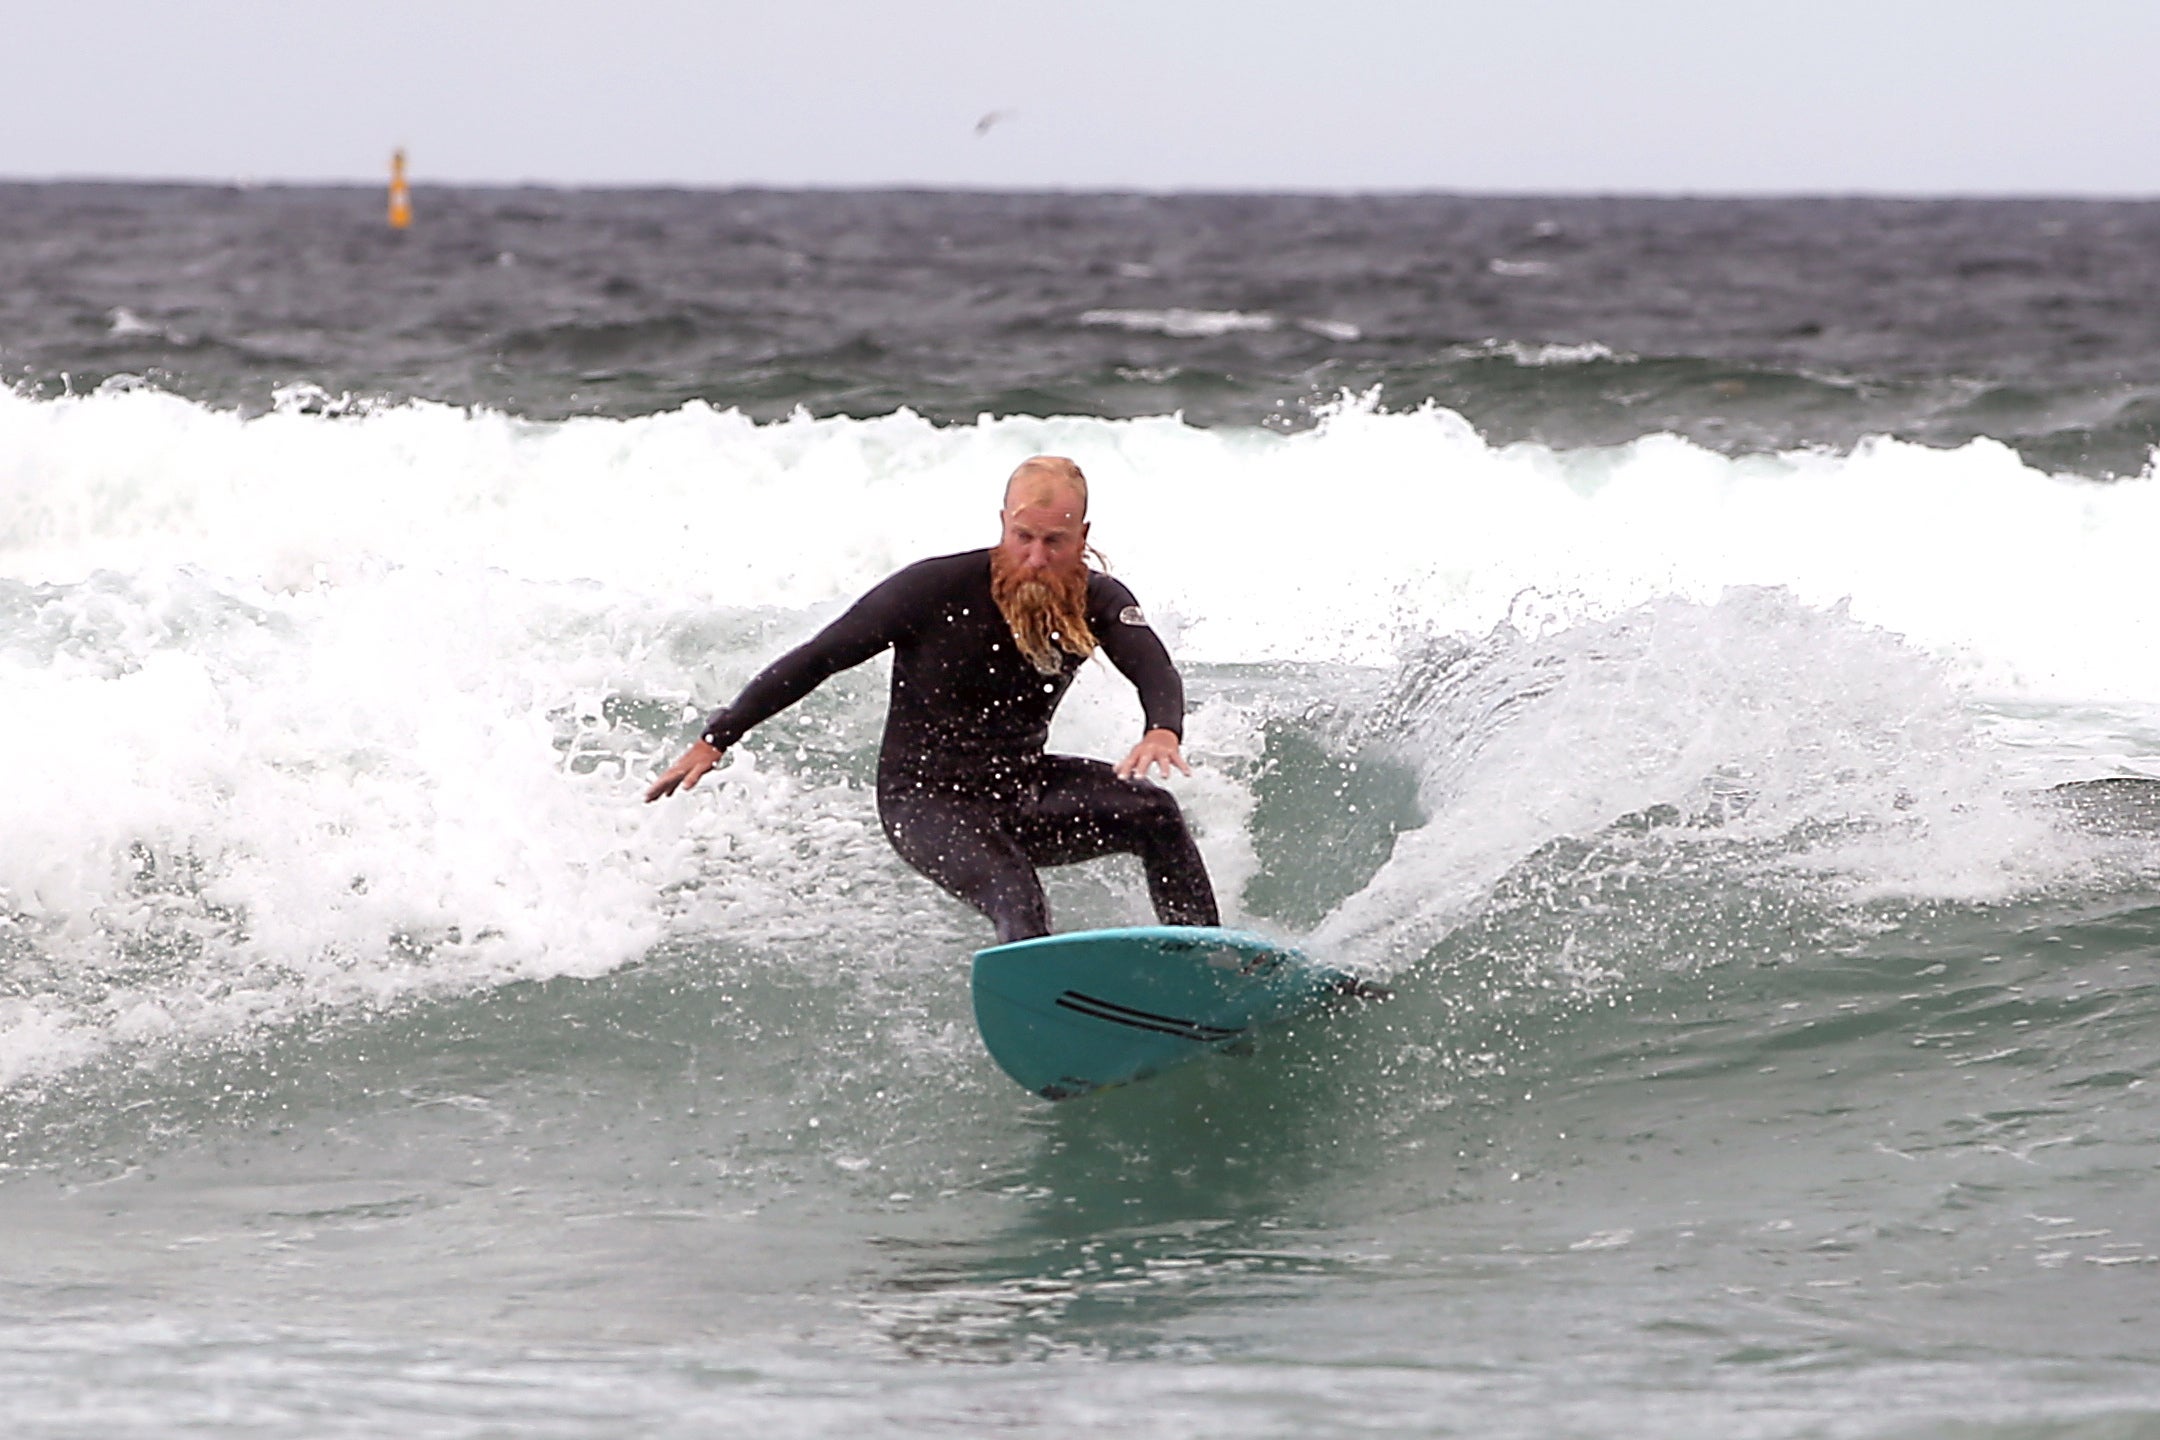 Blake Johnston Australia Man Breaks World Record For The Longest Surfing Session Pretty